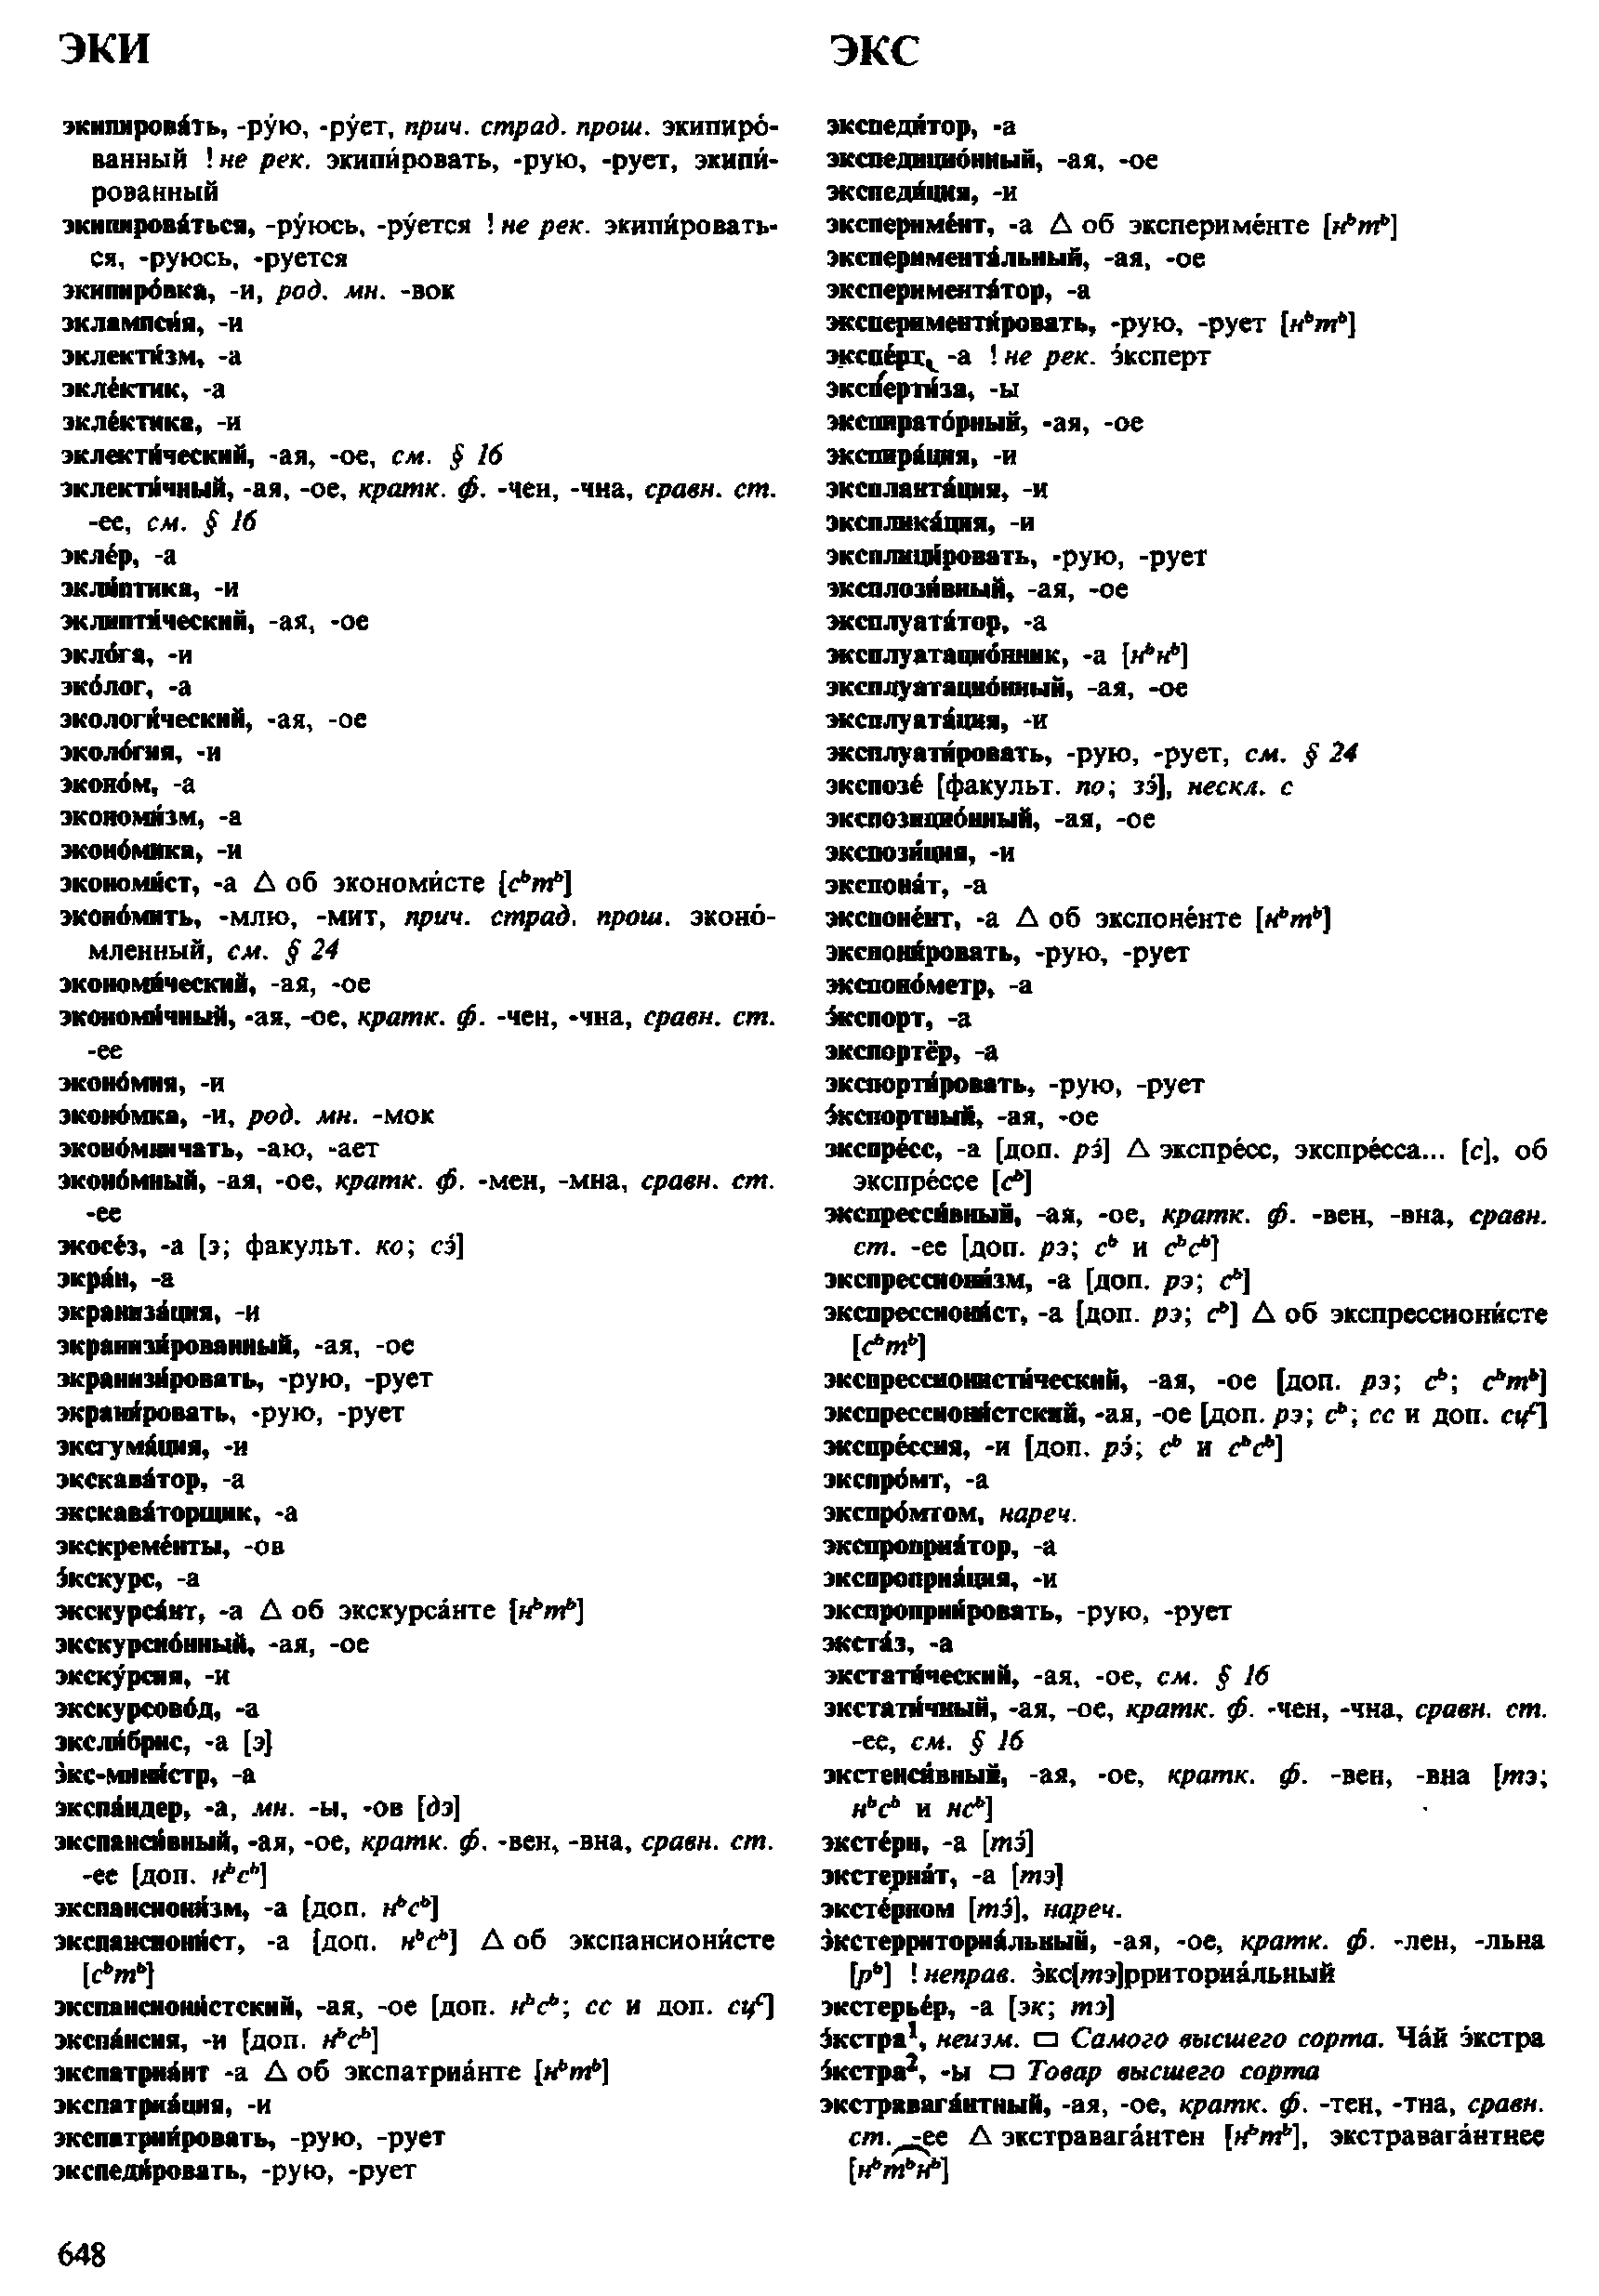 Фотокопия pdf / скан страницы 648 орфоэпического словаря под редакцией Аванесова (4 издание, 1988 год)